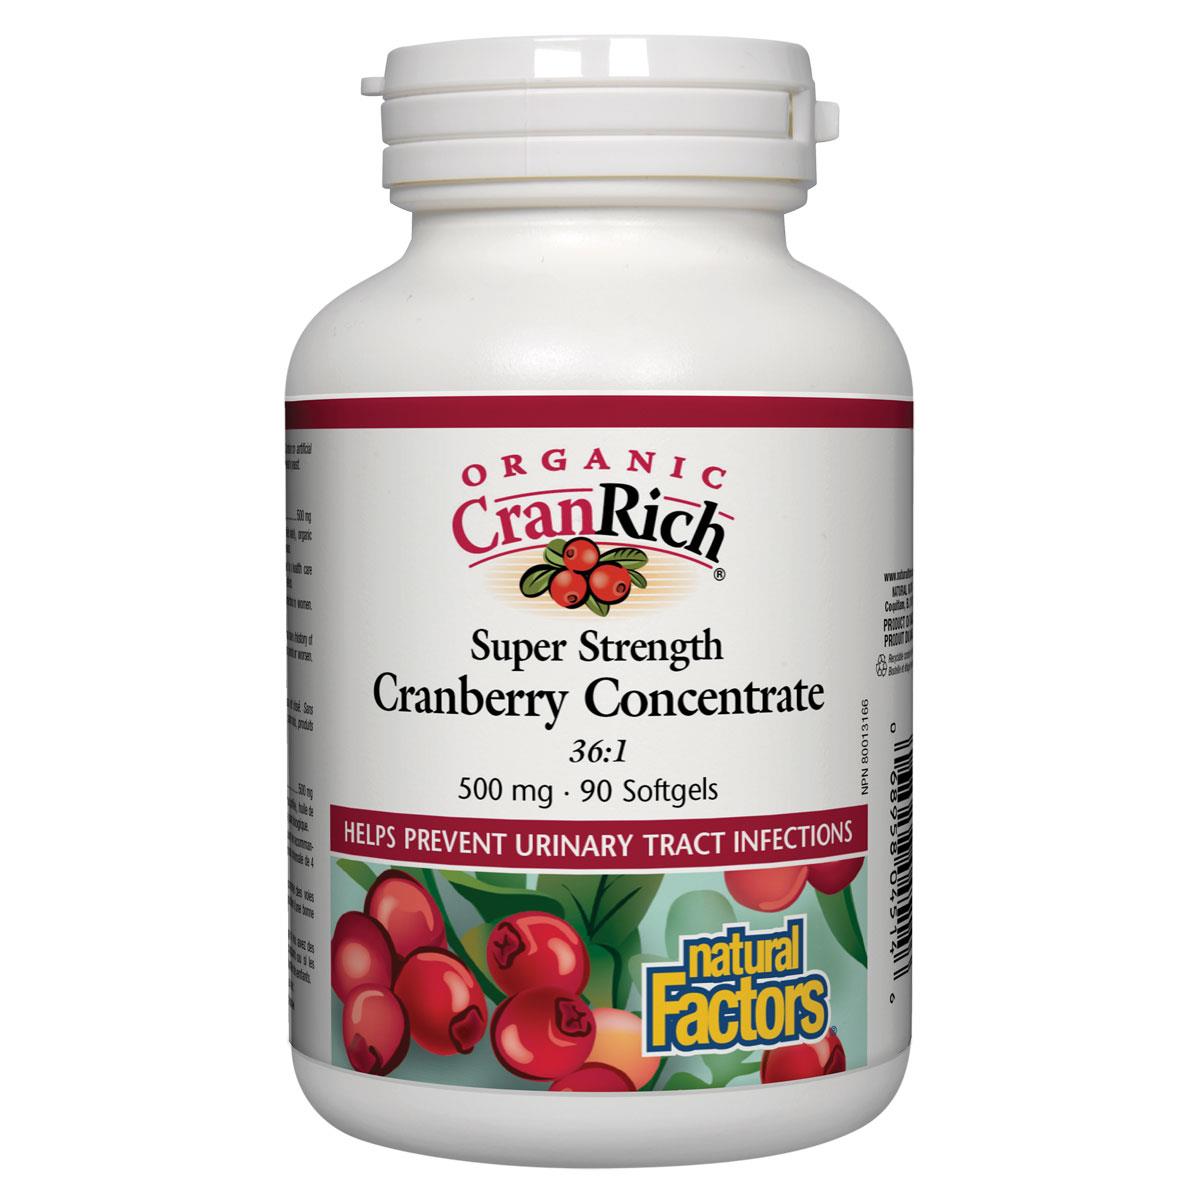 Natural Factors CranRich Super Strength Organic Cranberry Concentrate, 500mg, 90 Softgels